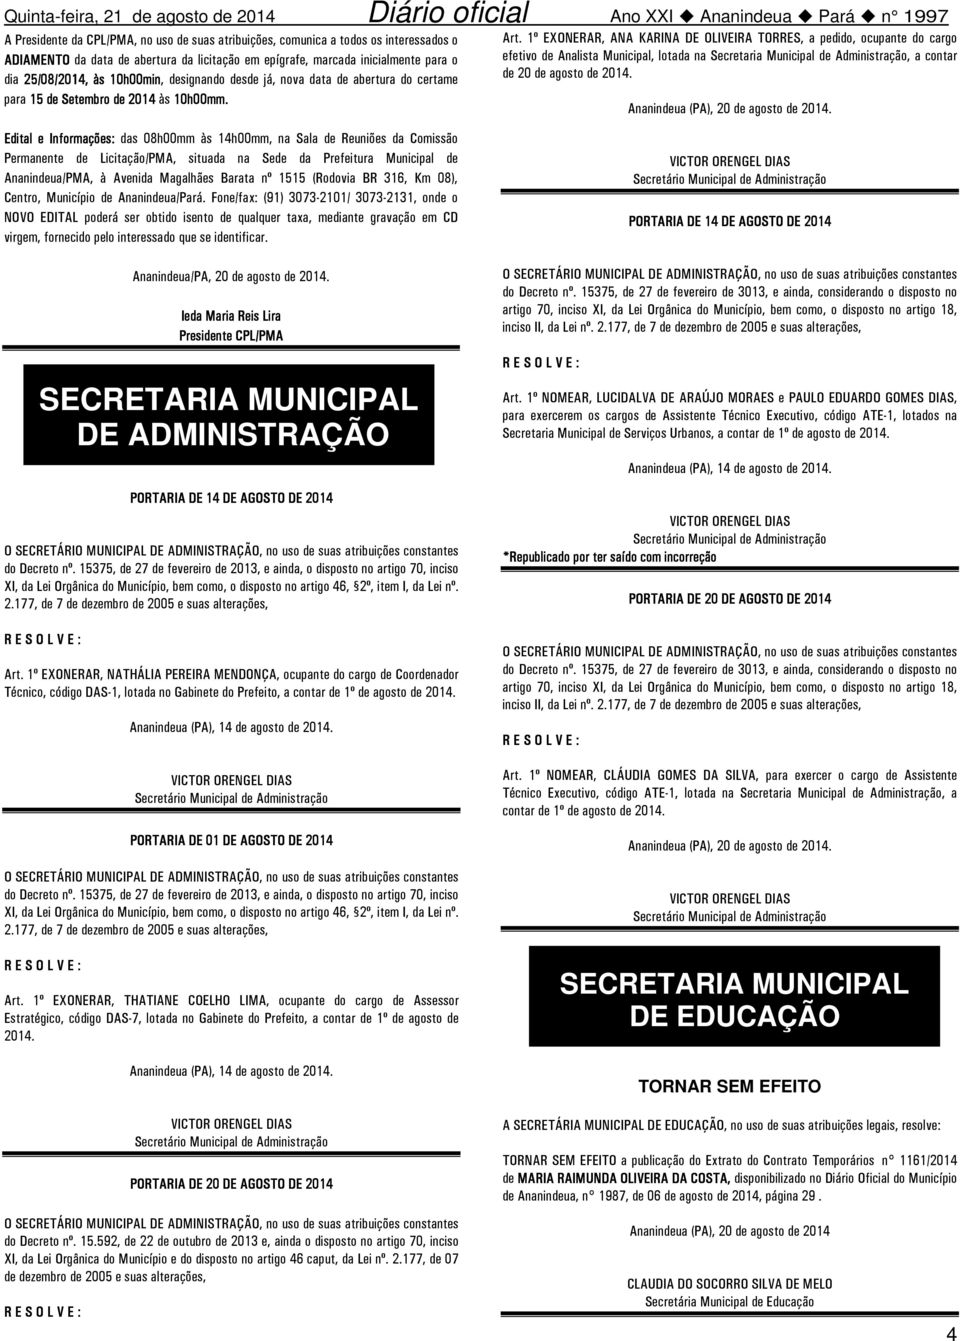 1º EXONERAR, ANA KARINA DE OLIVEIRA TORRES, a pedido, ocupante do cargo efetivo de Analista Municipal, lotada na Secretaria Municipal de Administração, a contar de 20 de agosto de 2014.